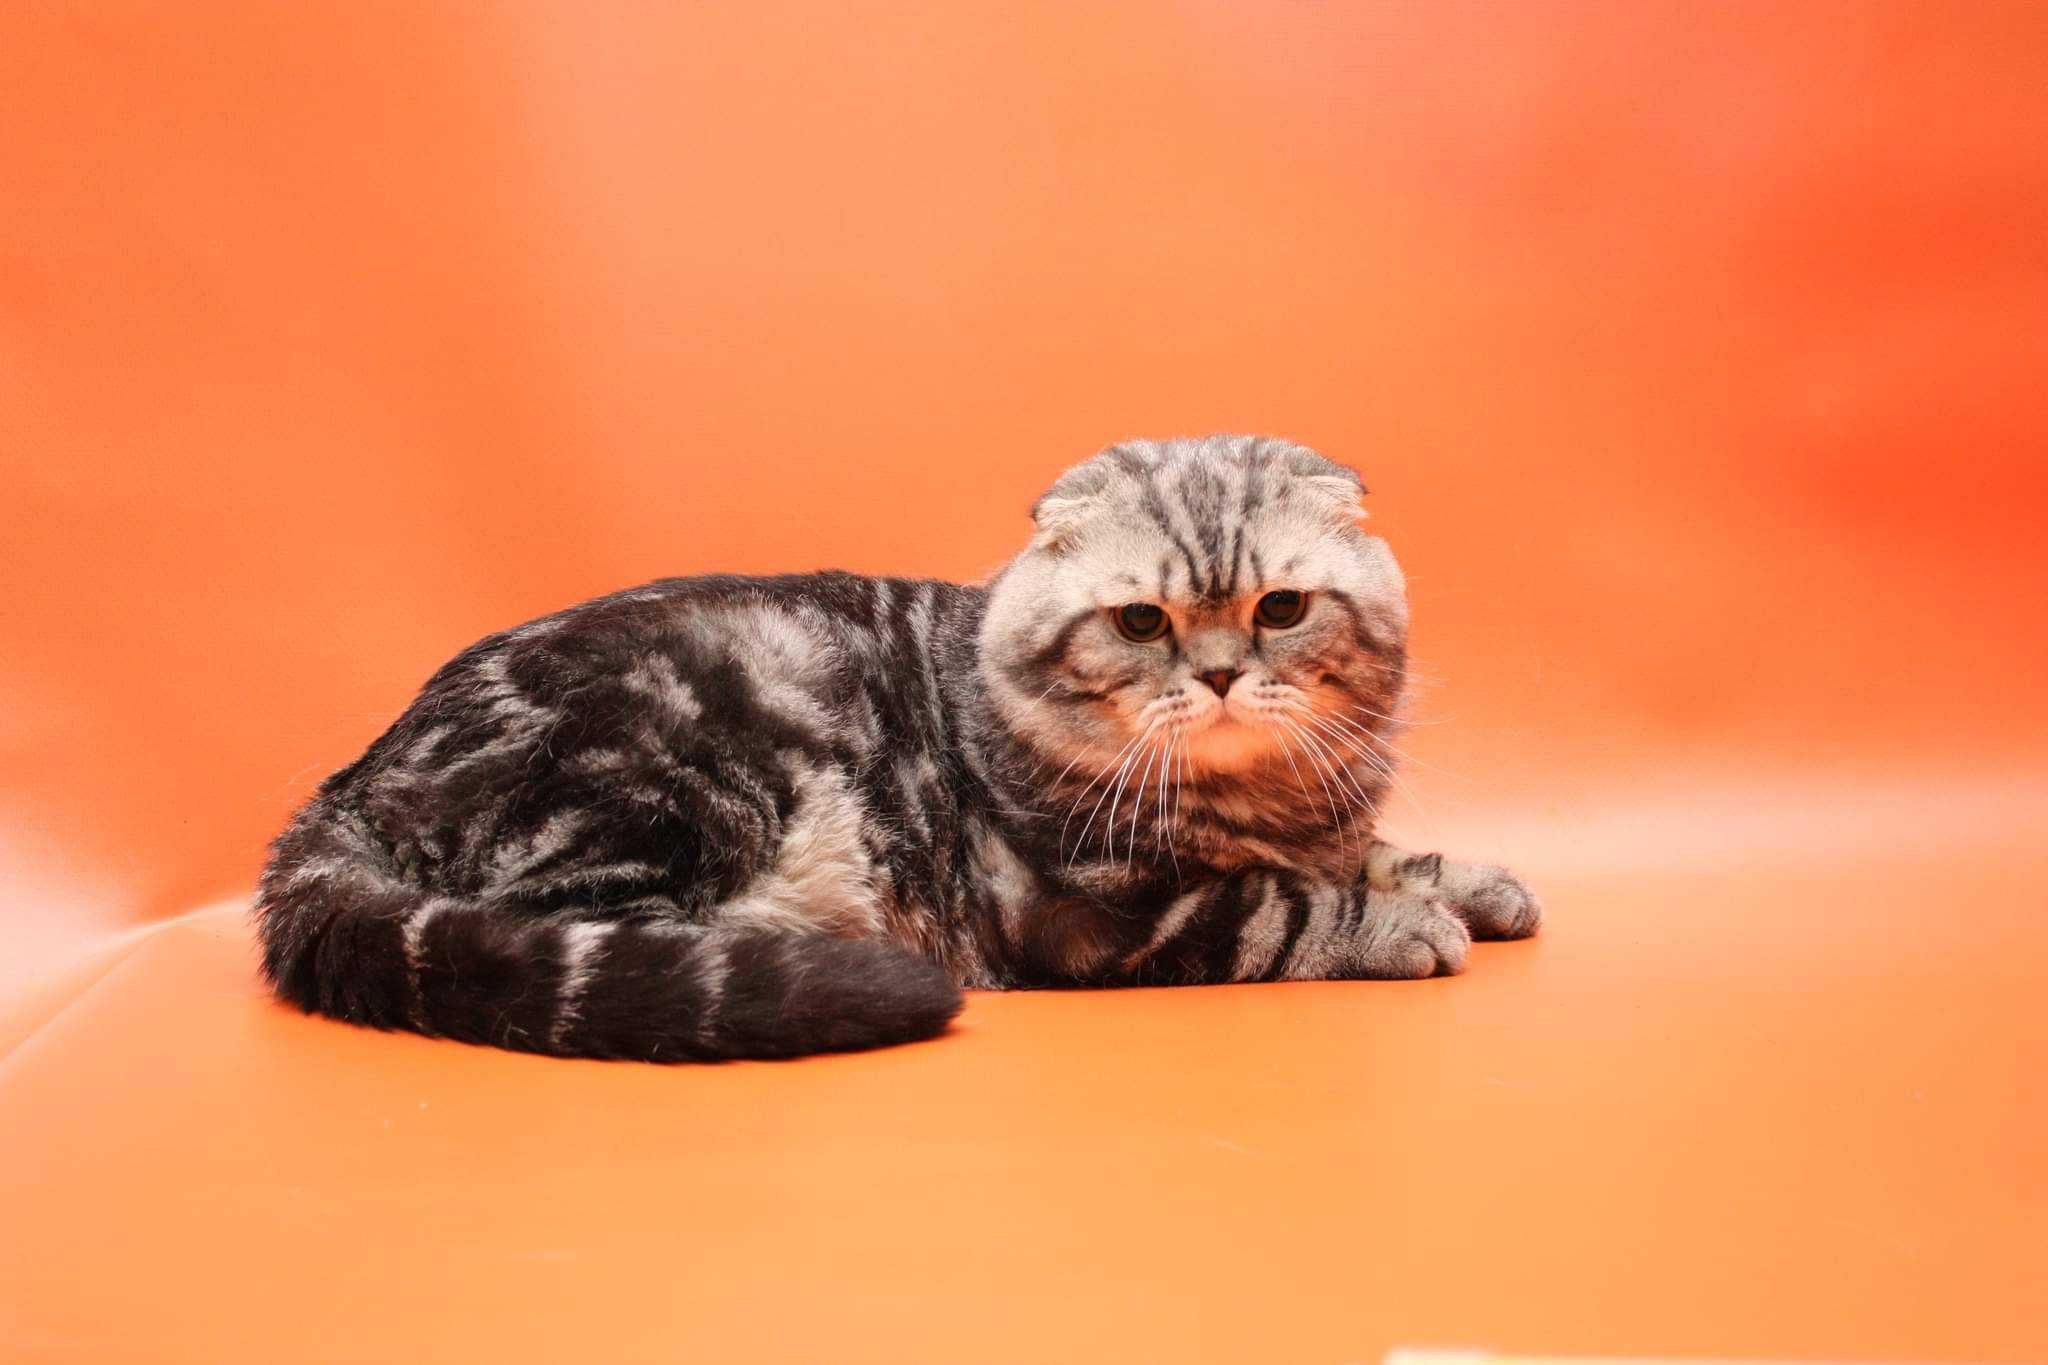 Вязка: Вислоухий шотландский мраморный кот! Киев, Голосеево